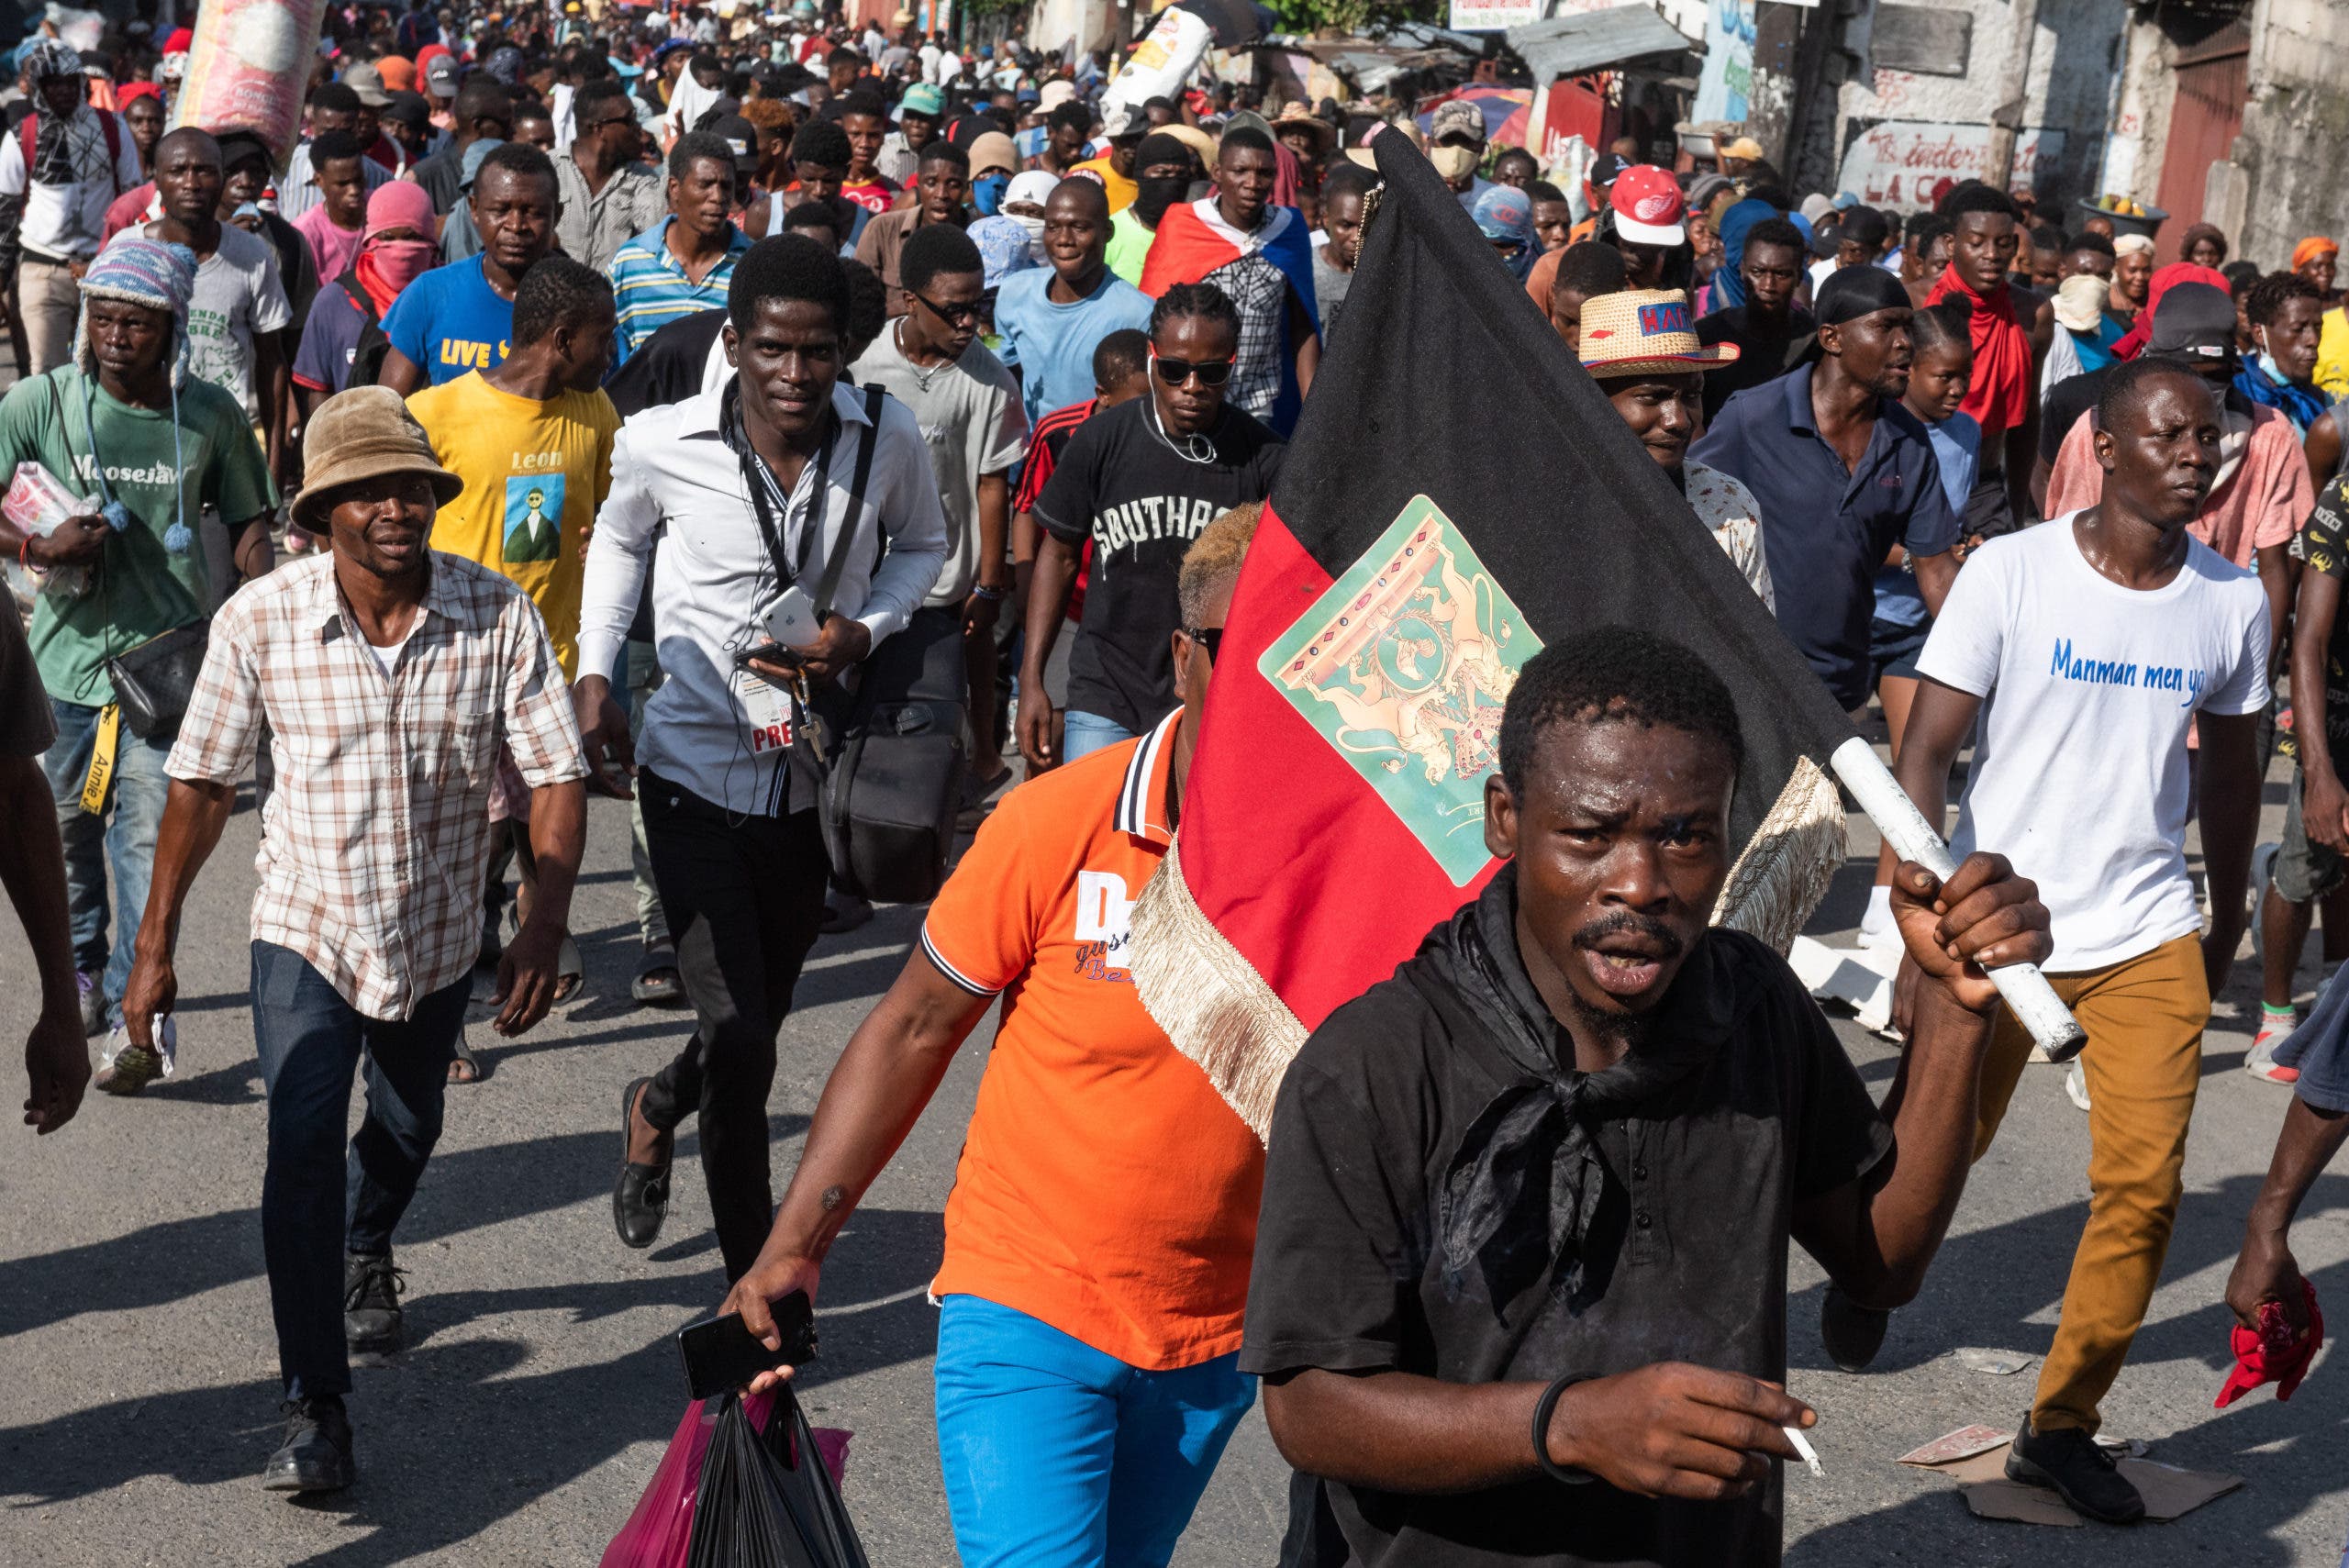 La ONU pide a todos los países considerar el envío de fuerzas a Haití